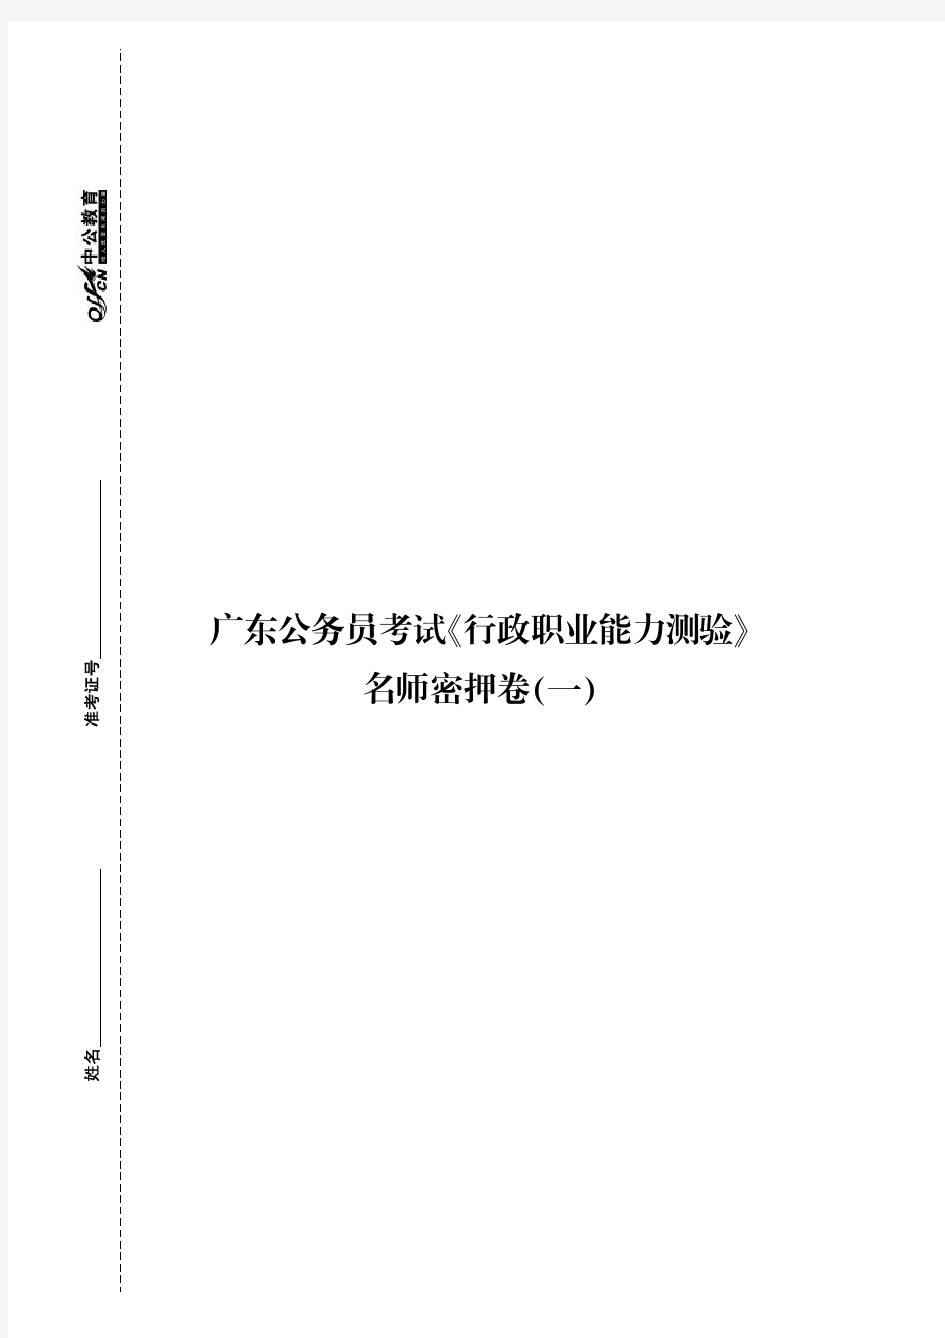 2014广东省公务员考试资料 中公名师密押试卷 行测